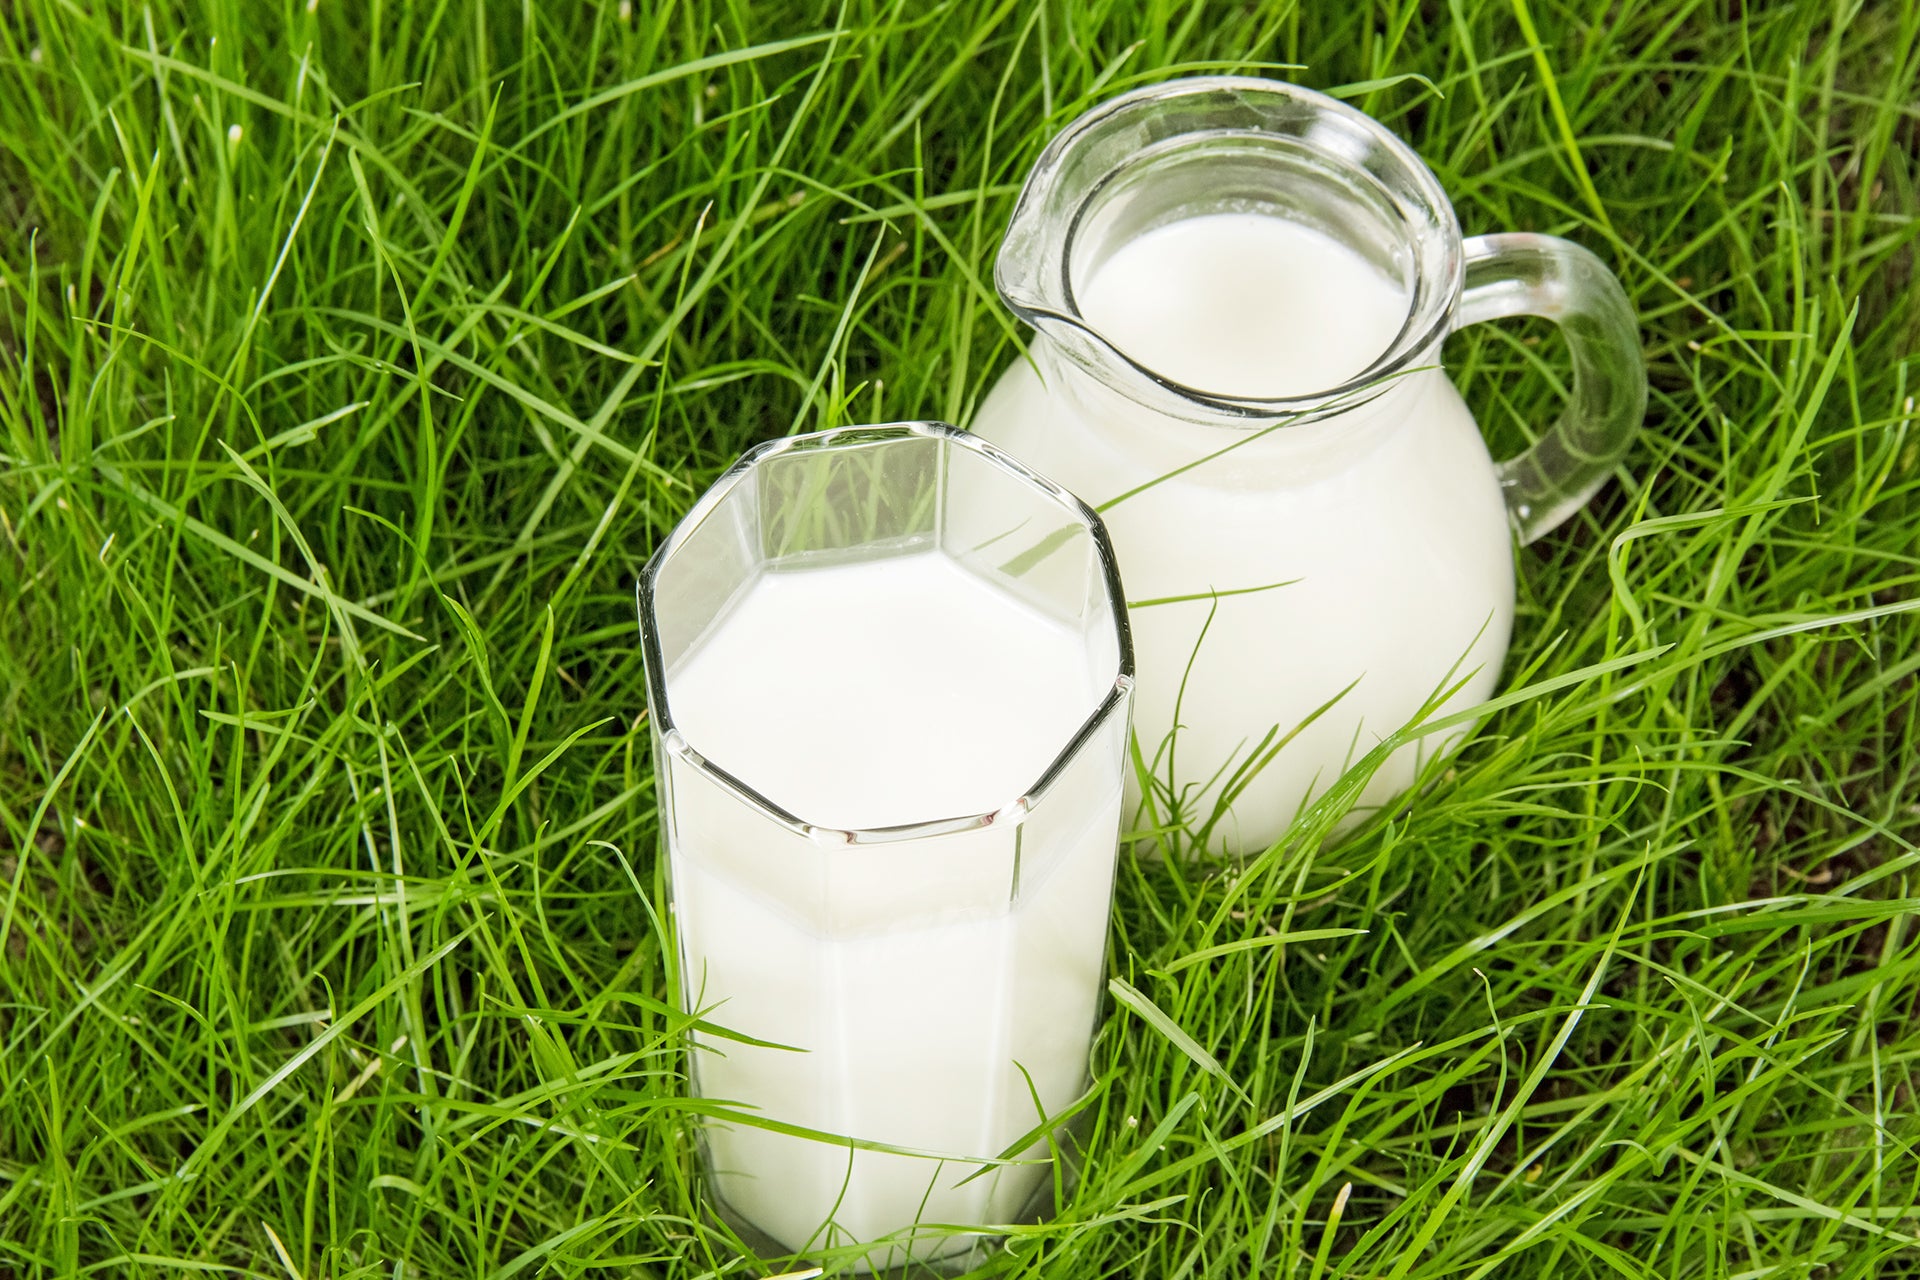 グラスフェッドミルクとは？ 特徴や一般的な牛乳との違いを解説